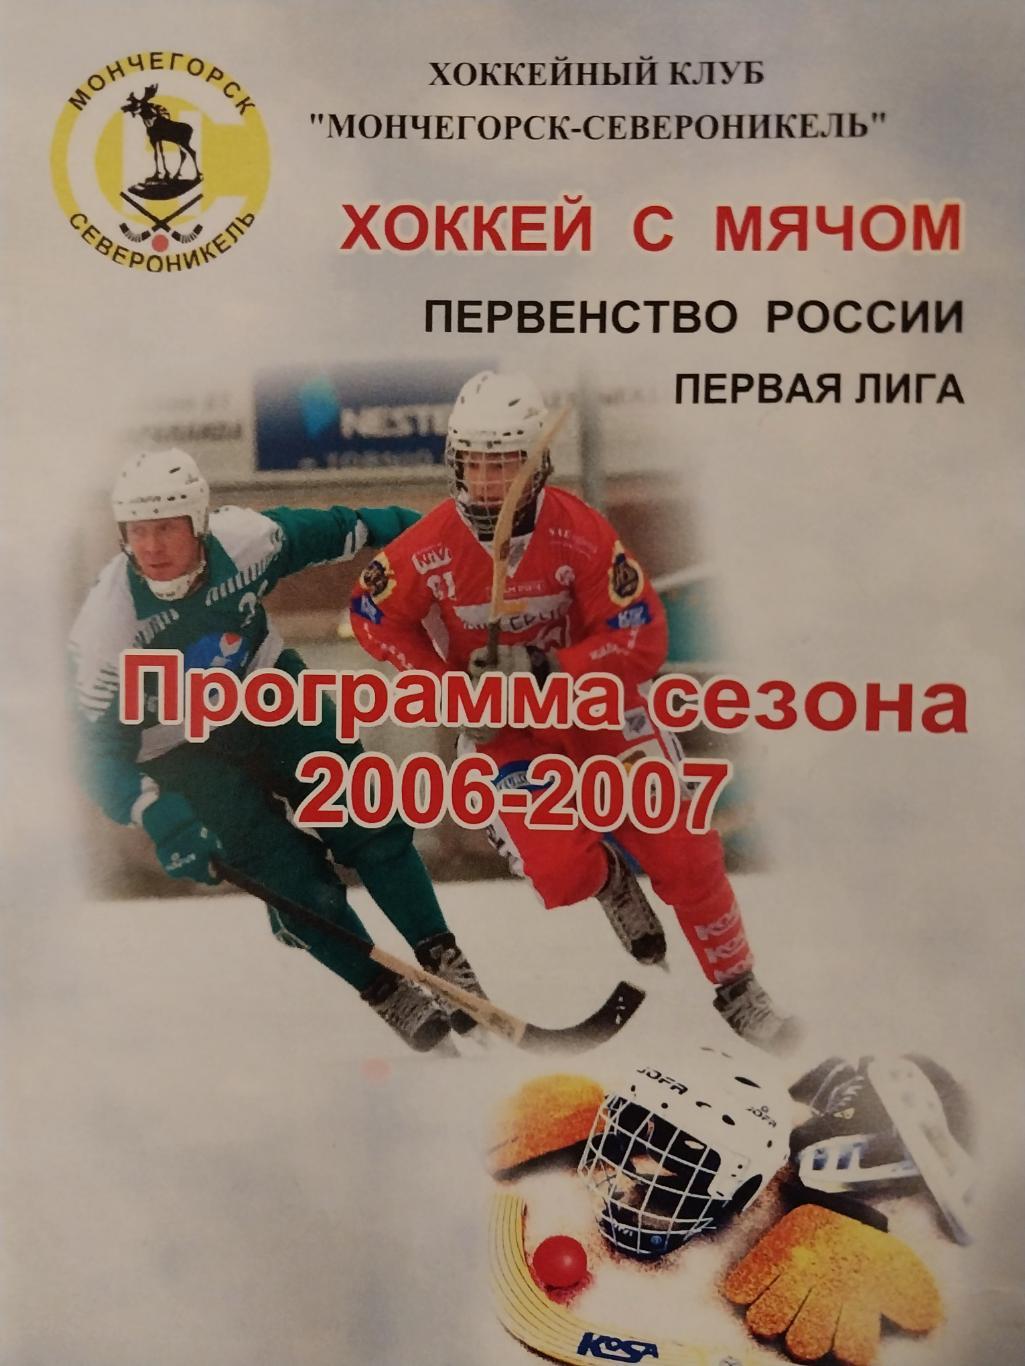 Хоккей с мячом, Мончегорск-Североникель, 2006-2007